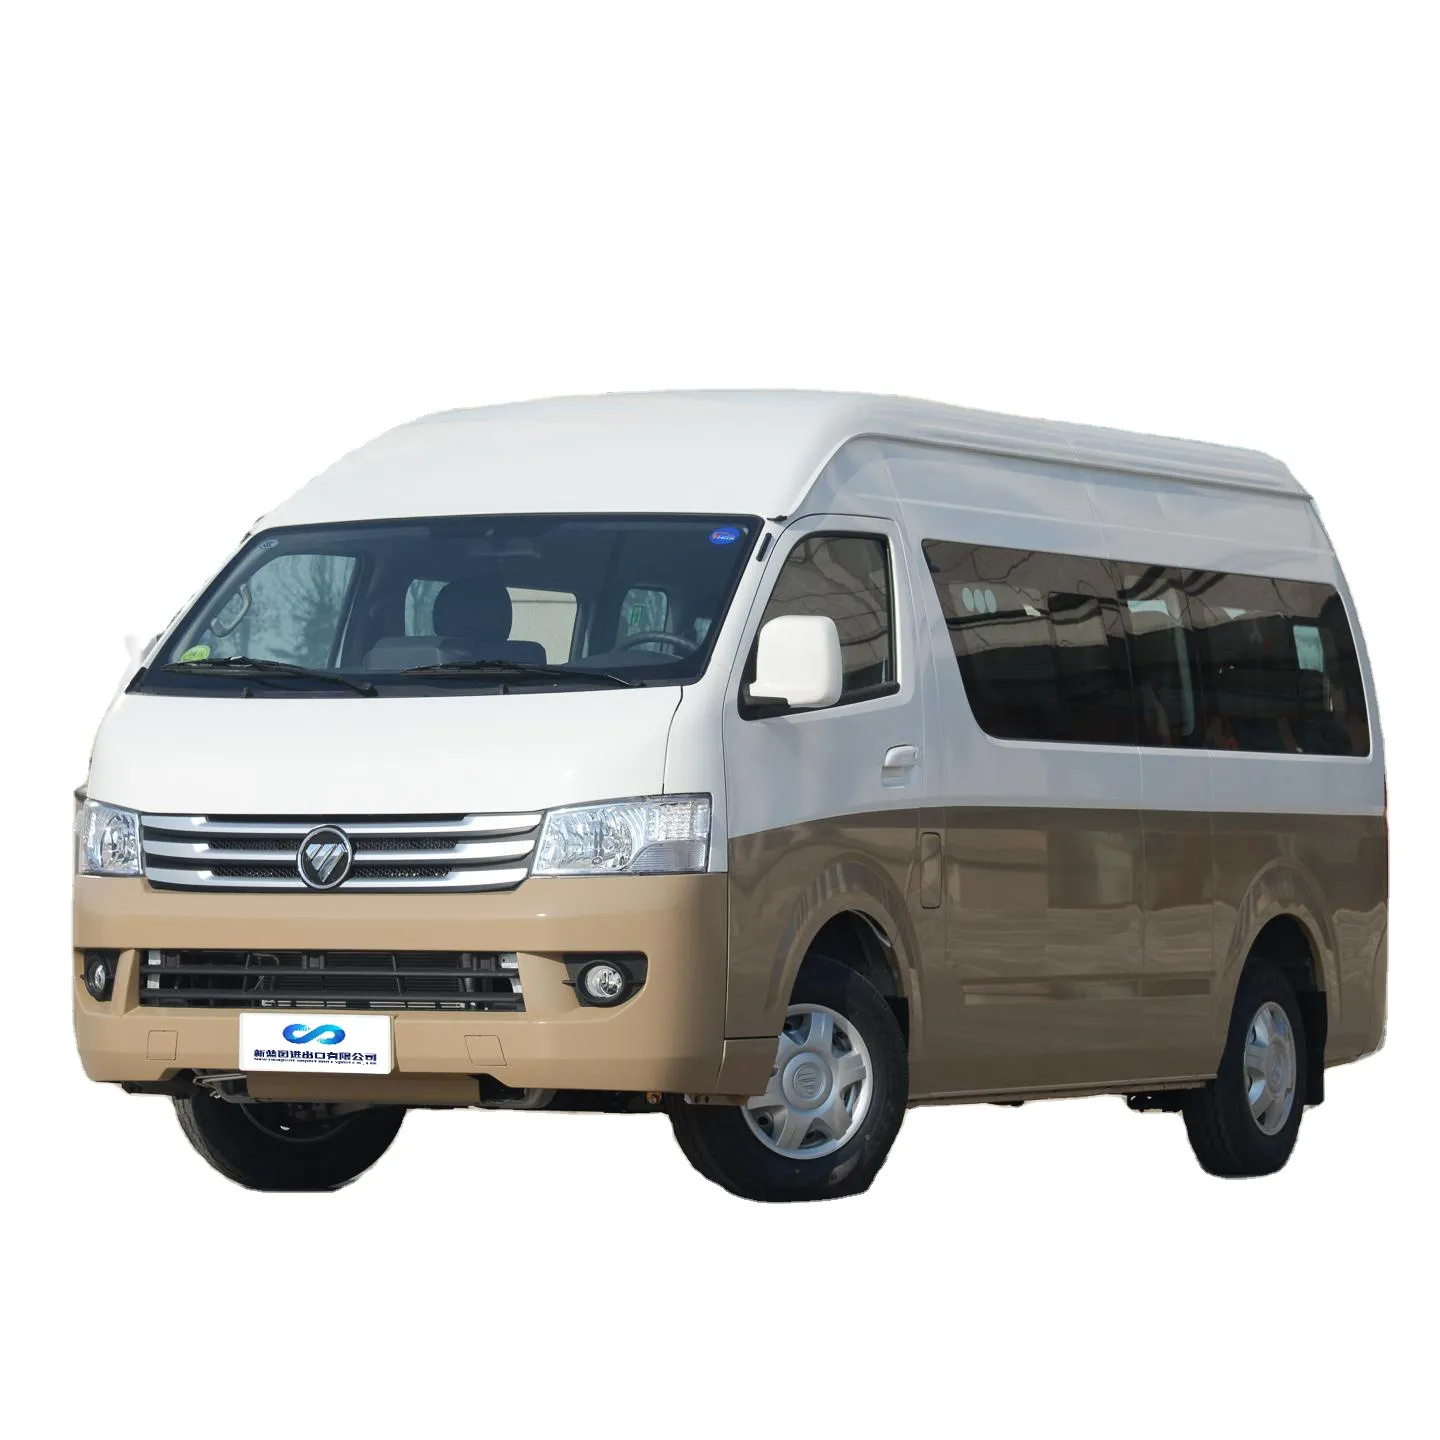 Лидер продаж, Foton View G9, мини-фургон, автобус, 15 мест, правый руль, левый, Foton G9